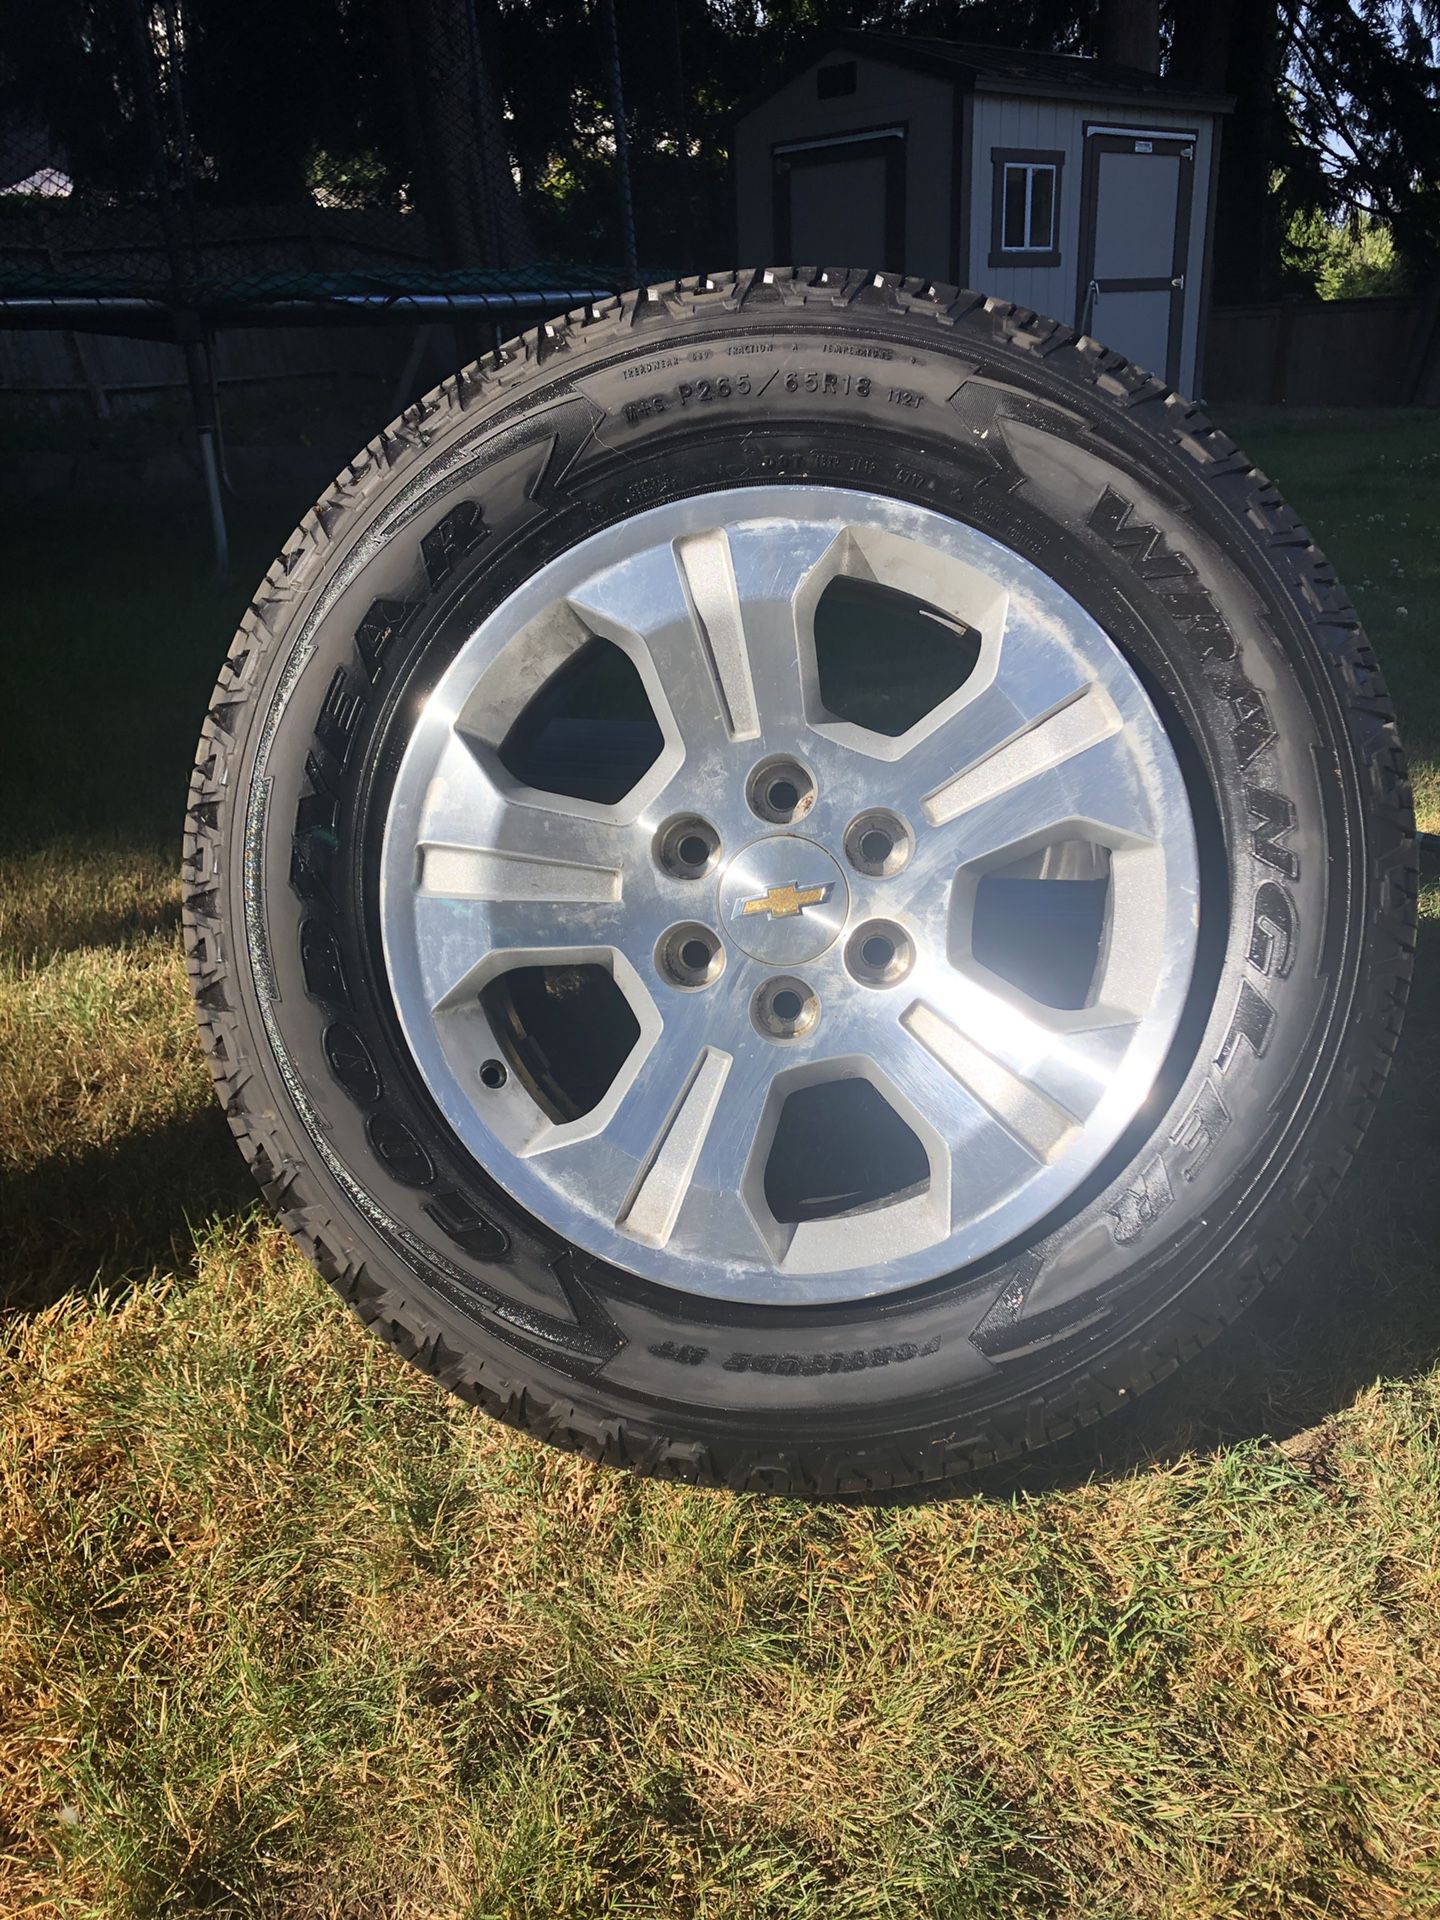 2018 Chevy Silverado rims and tires